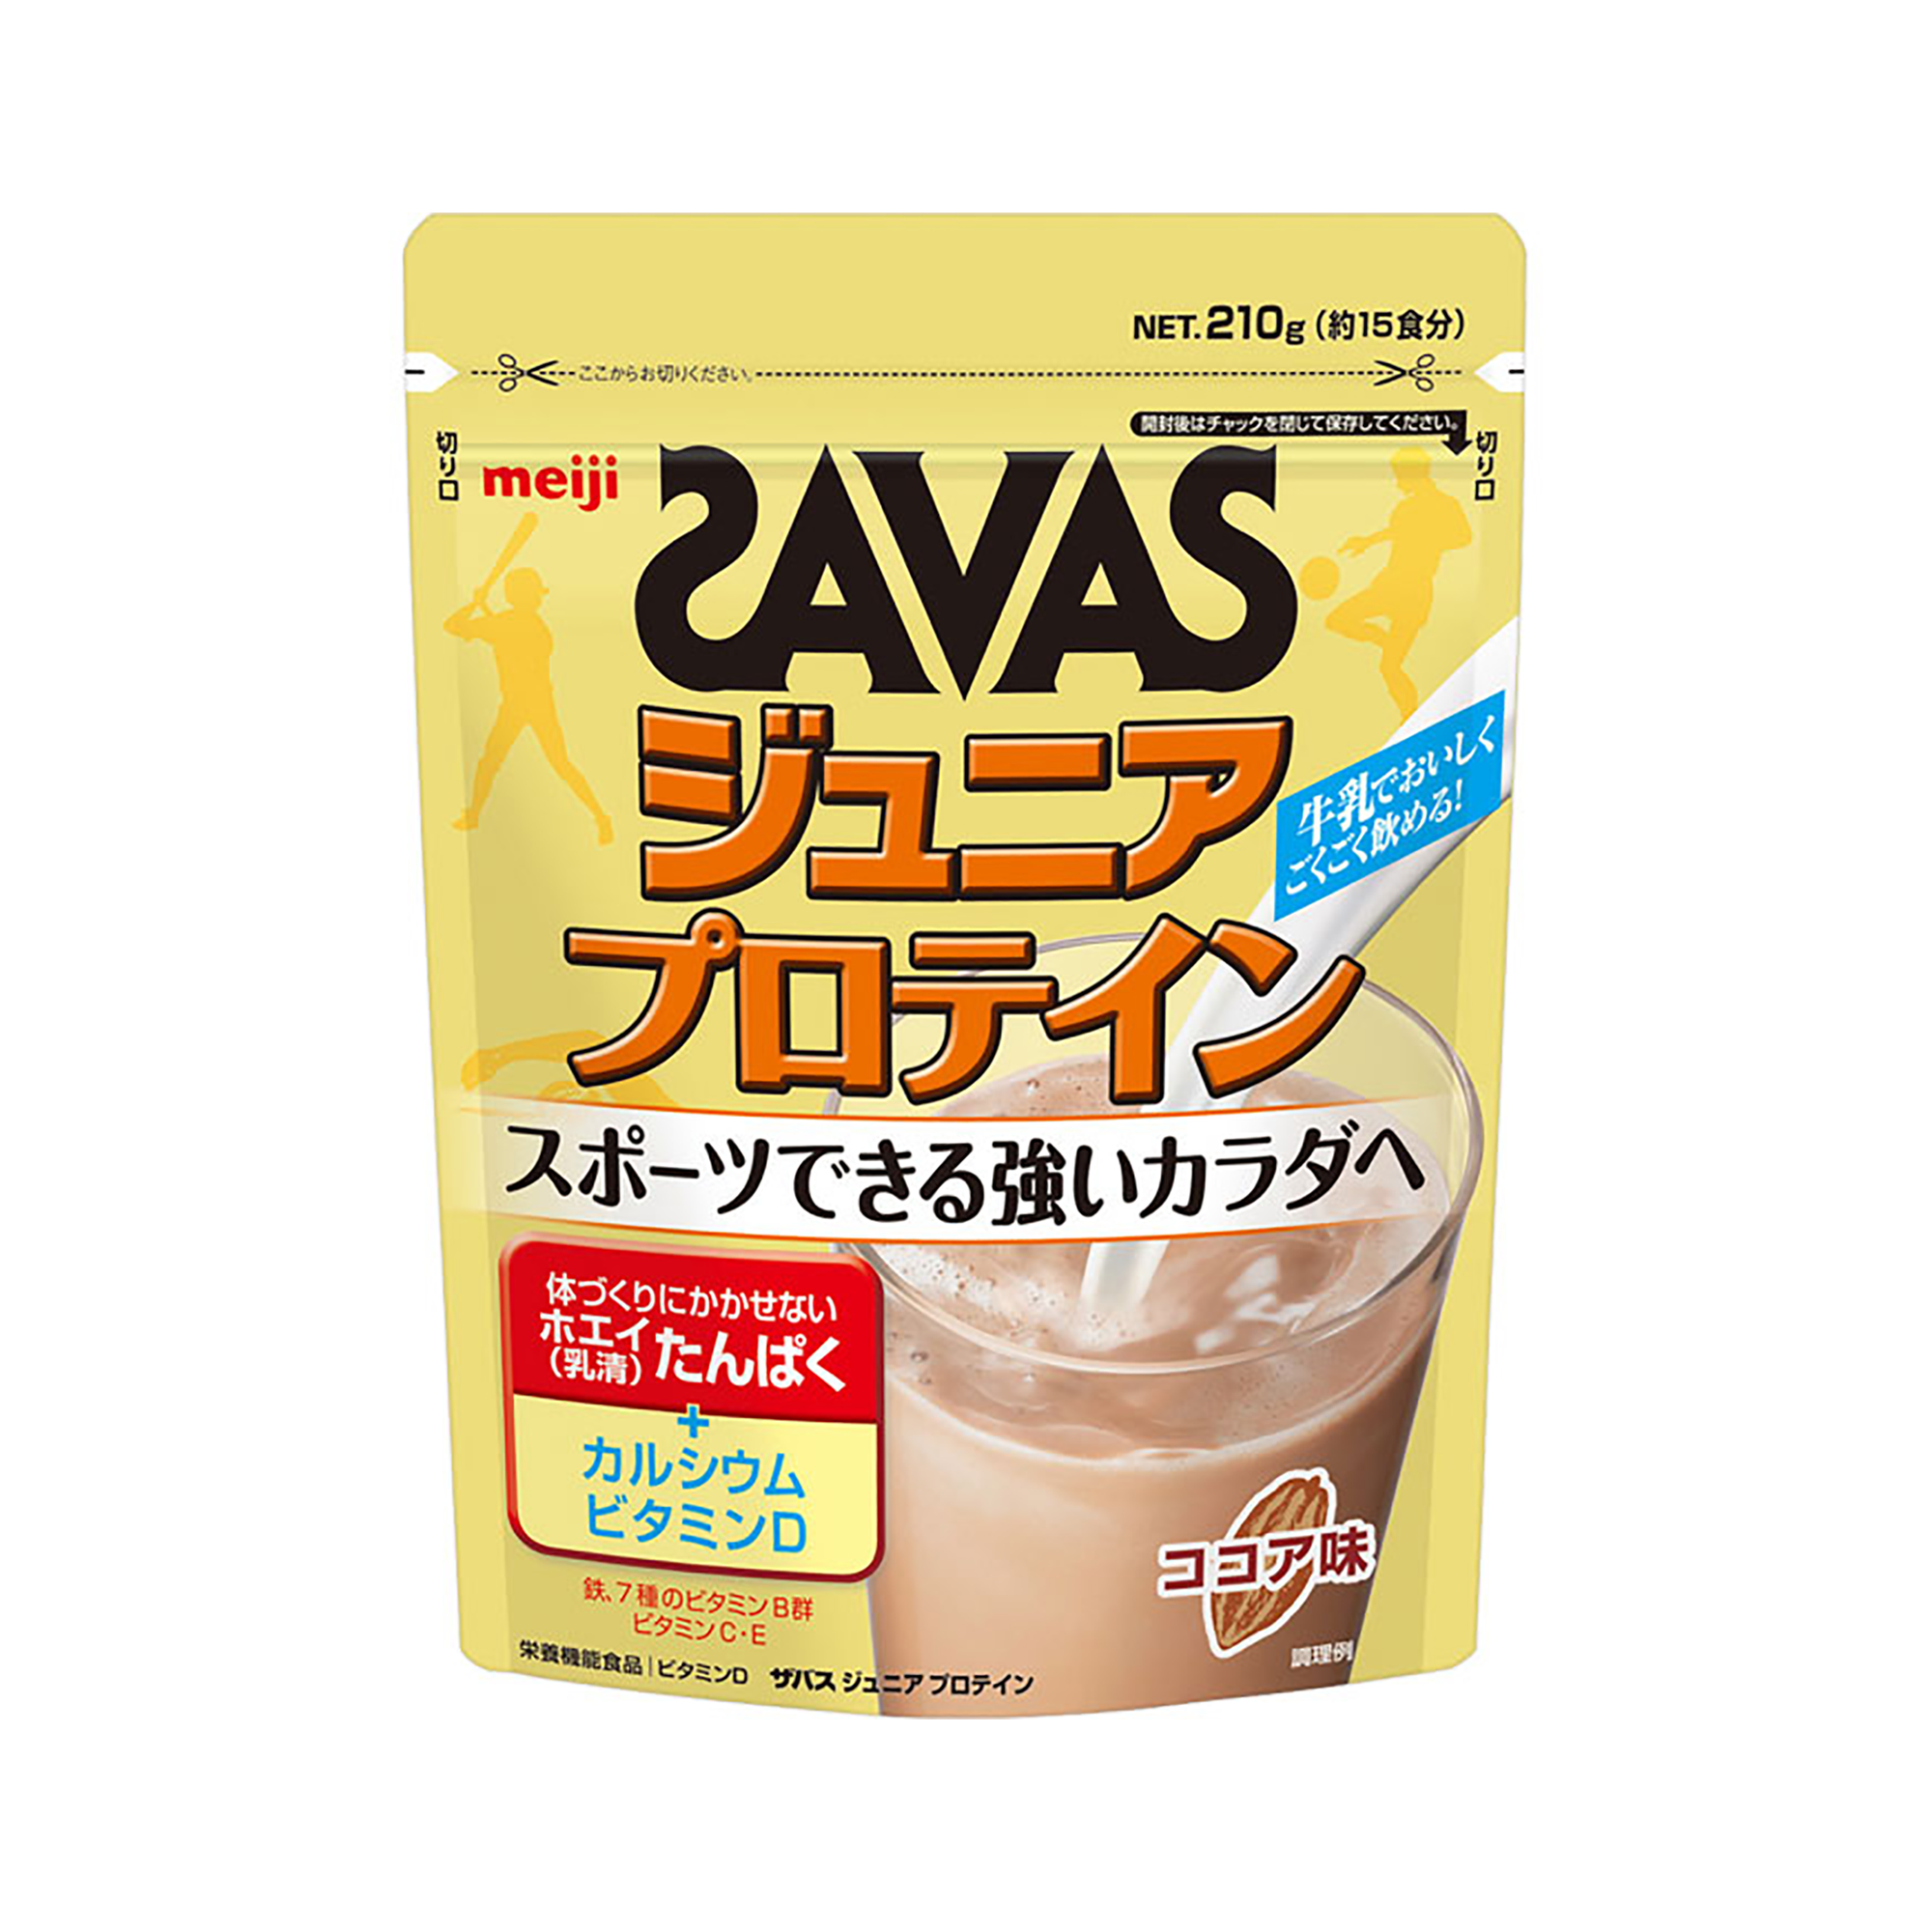 明治 SAVAS 成长期乳清蛋白粉 可可味 15回餐 210g